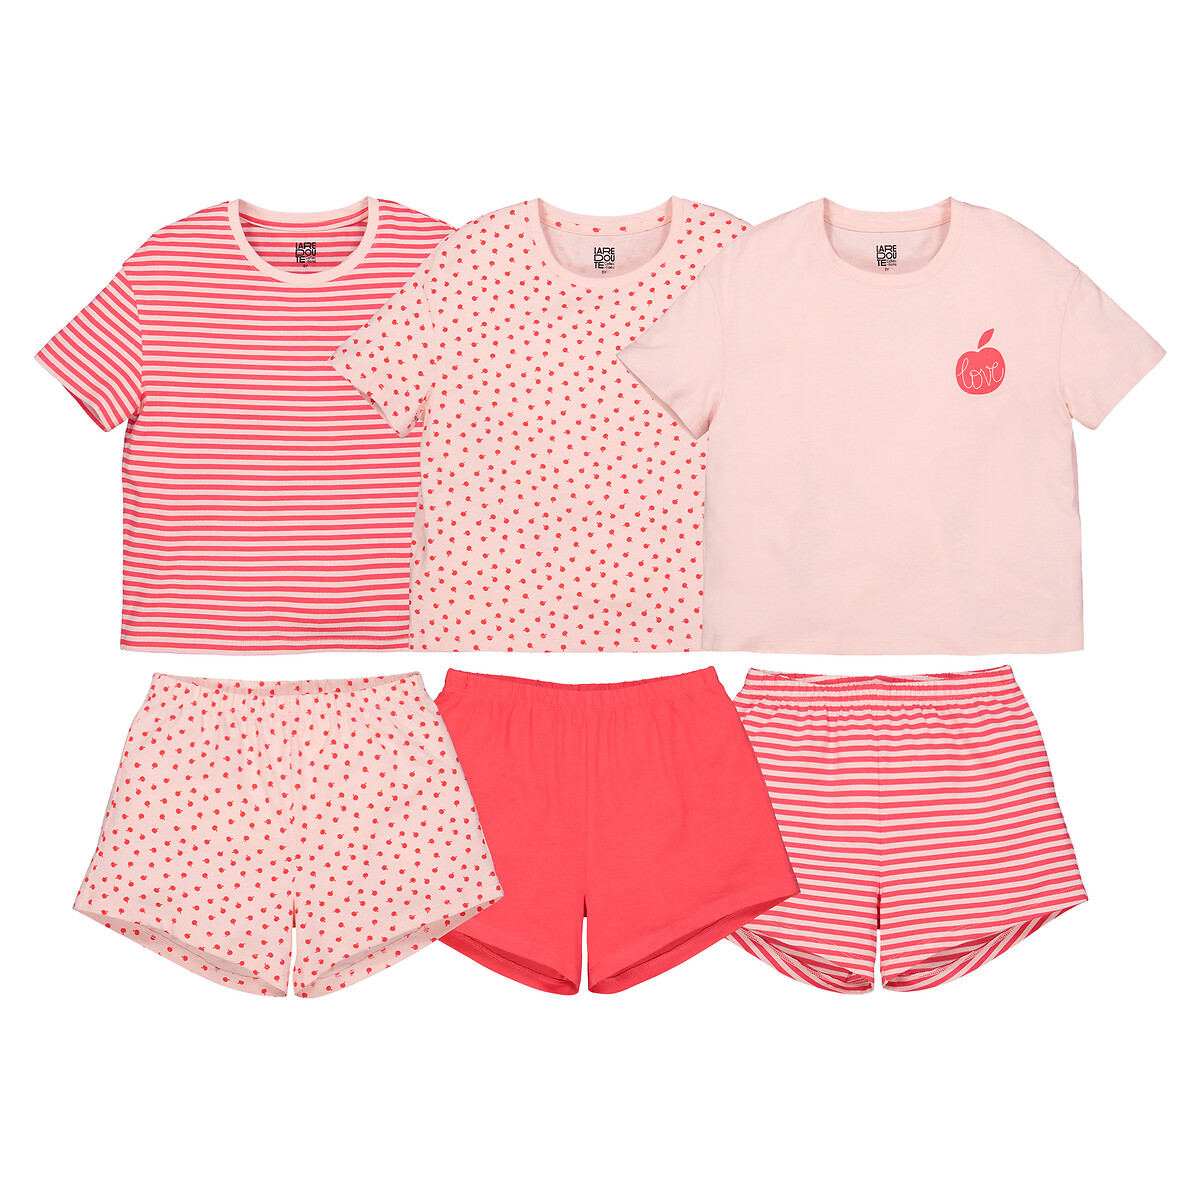 Комплект из трех пижам La Redoute 4 года - 102 см розовый комплект из двух пижам la redoute 4 года 102 см синий